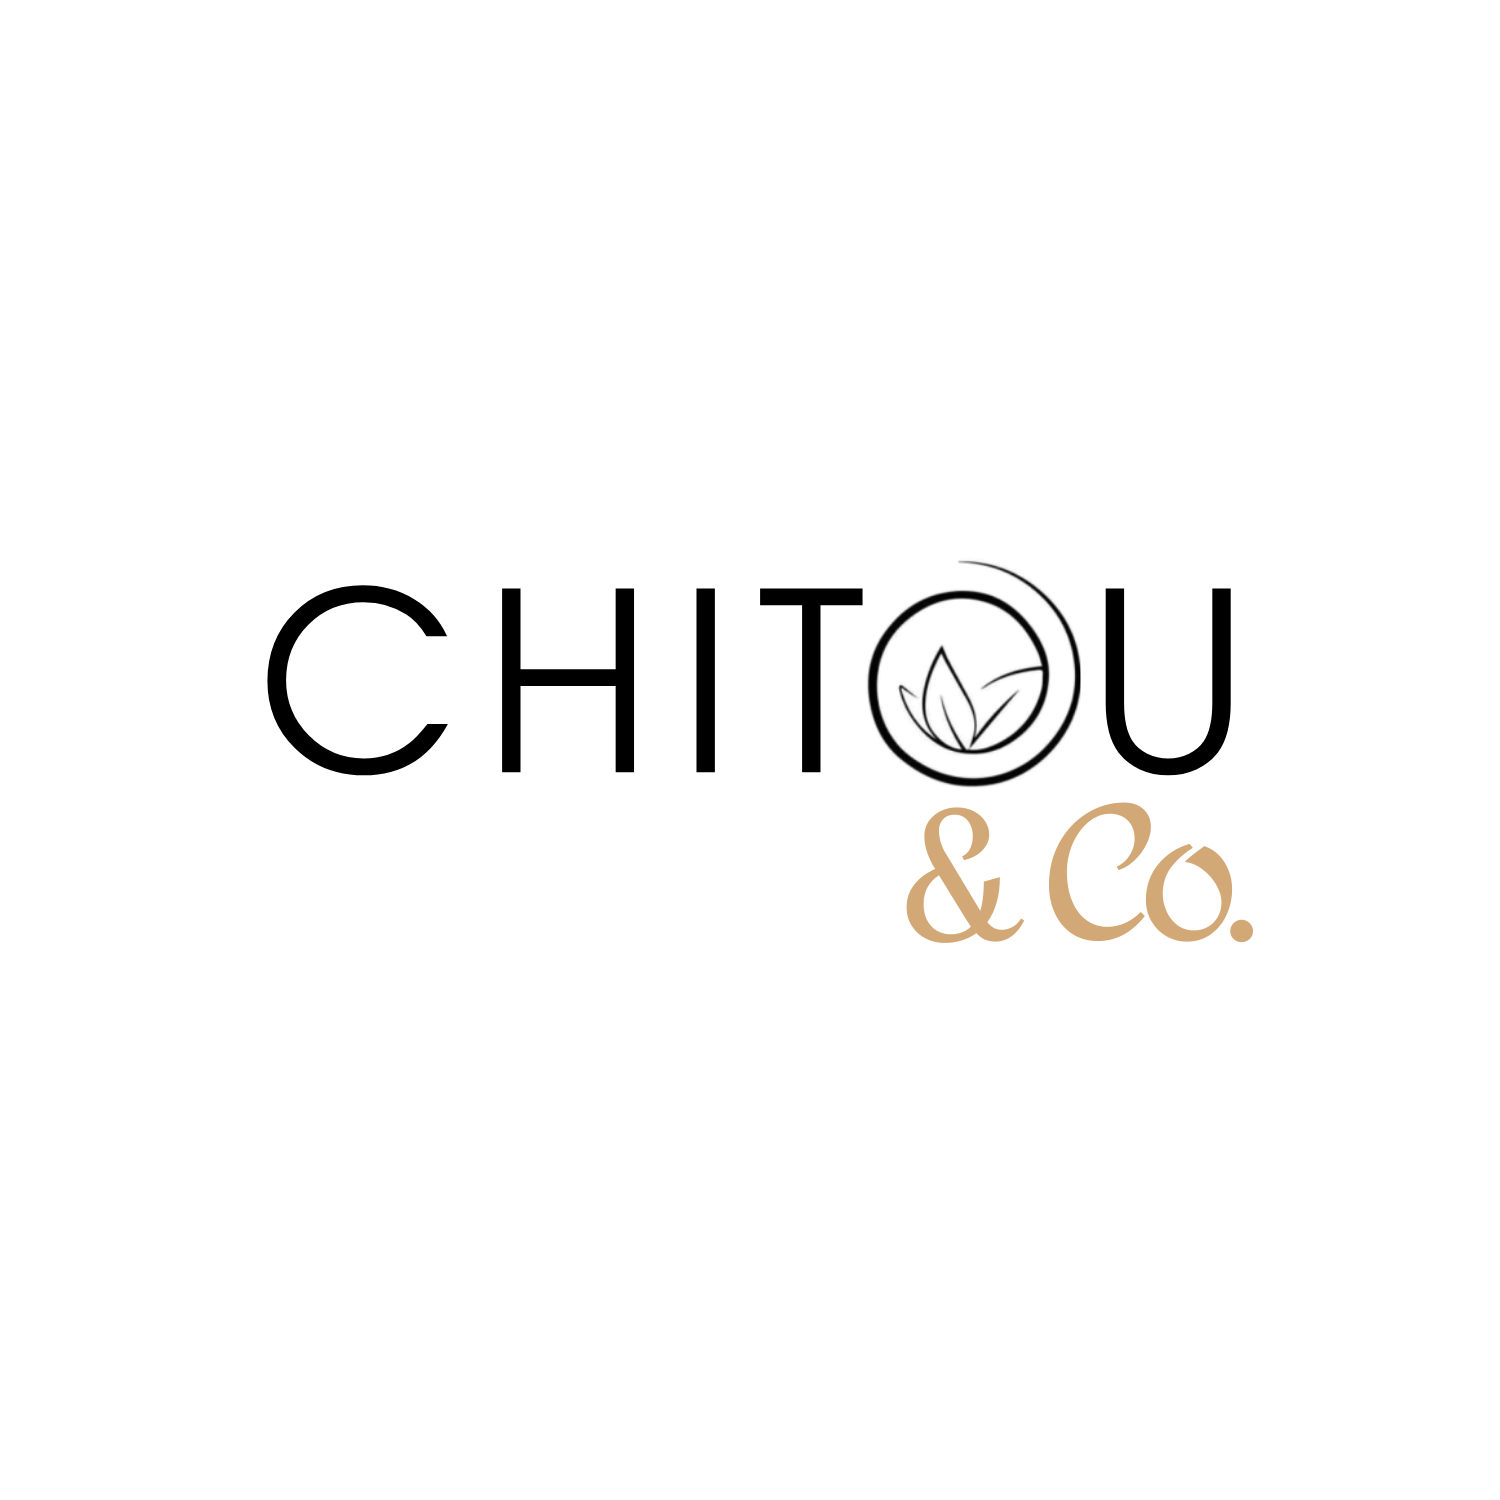 Chitou & Co